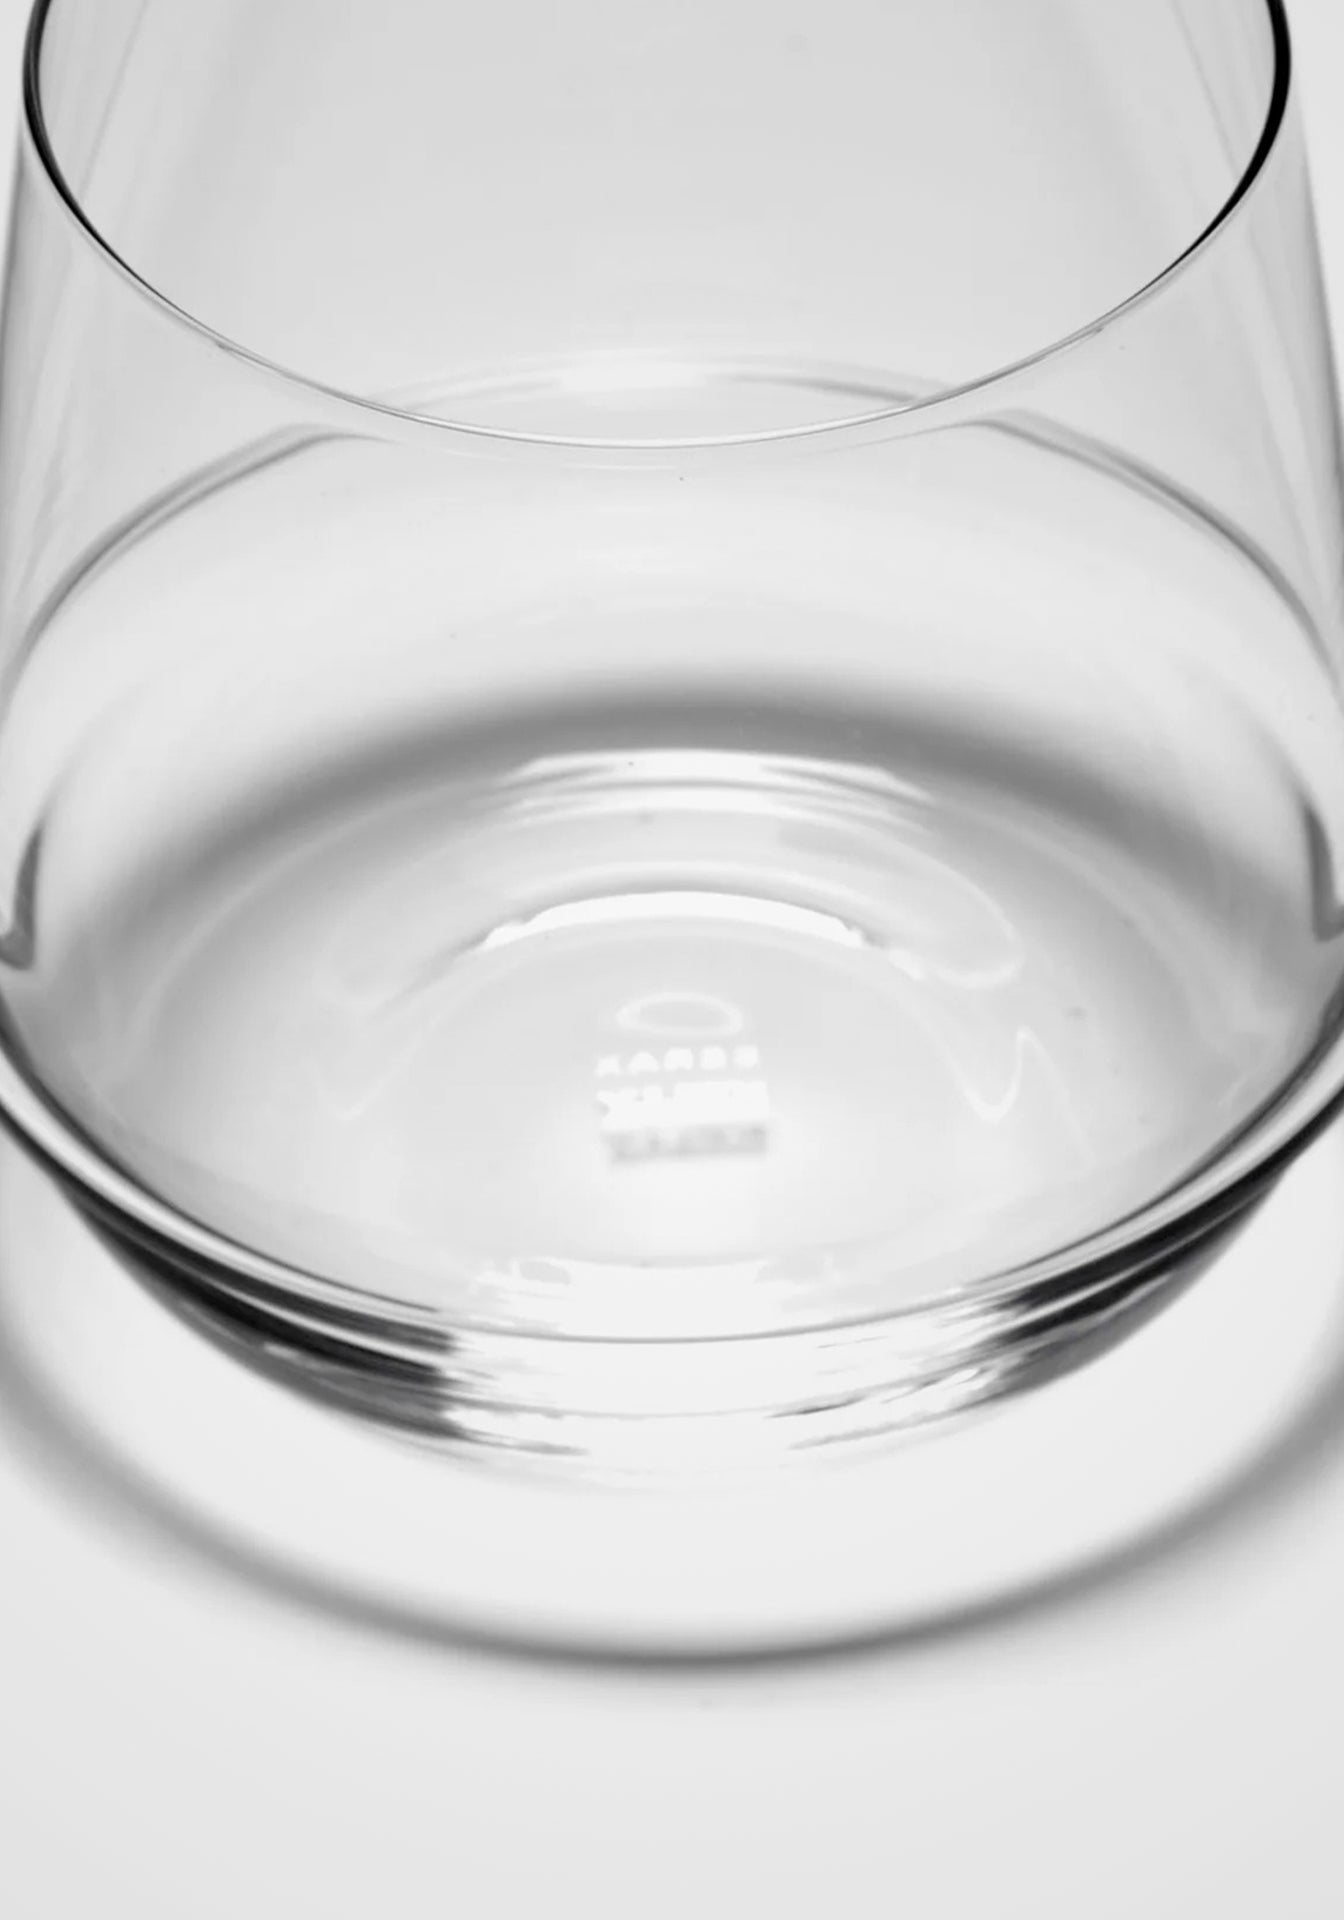 Kelly Wearstler Dune Whisky Glass, Set of 4